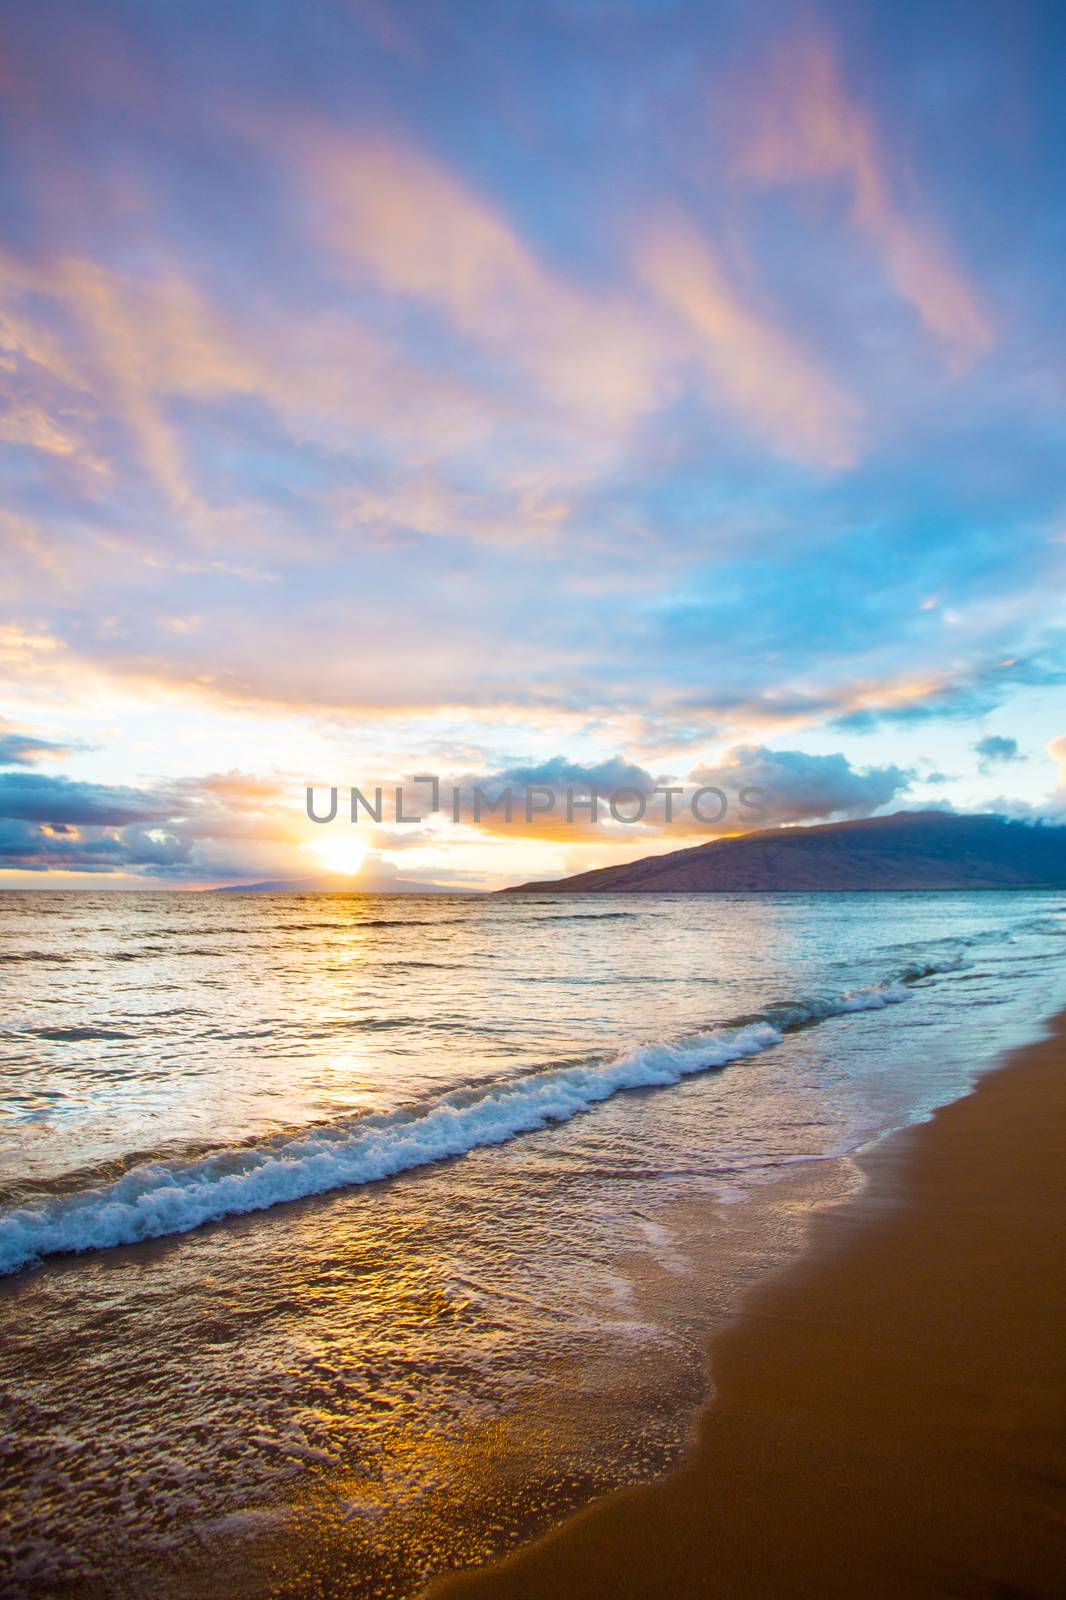 Kihei Sunset on Beach by Creatista